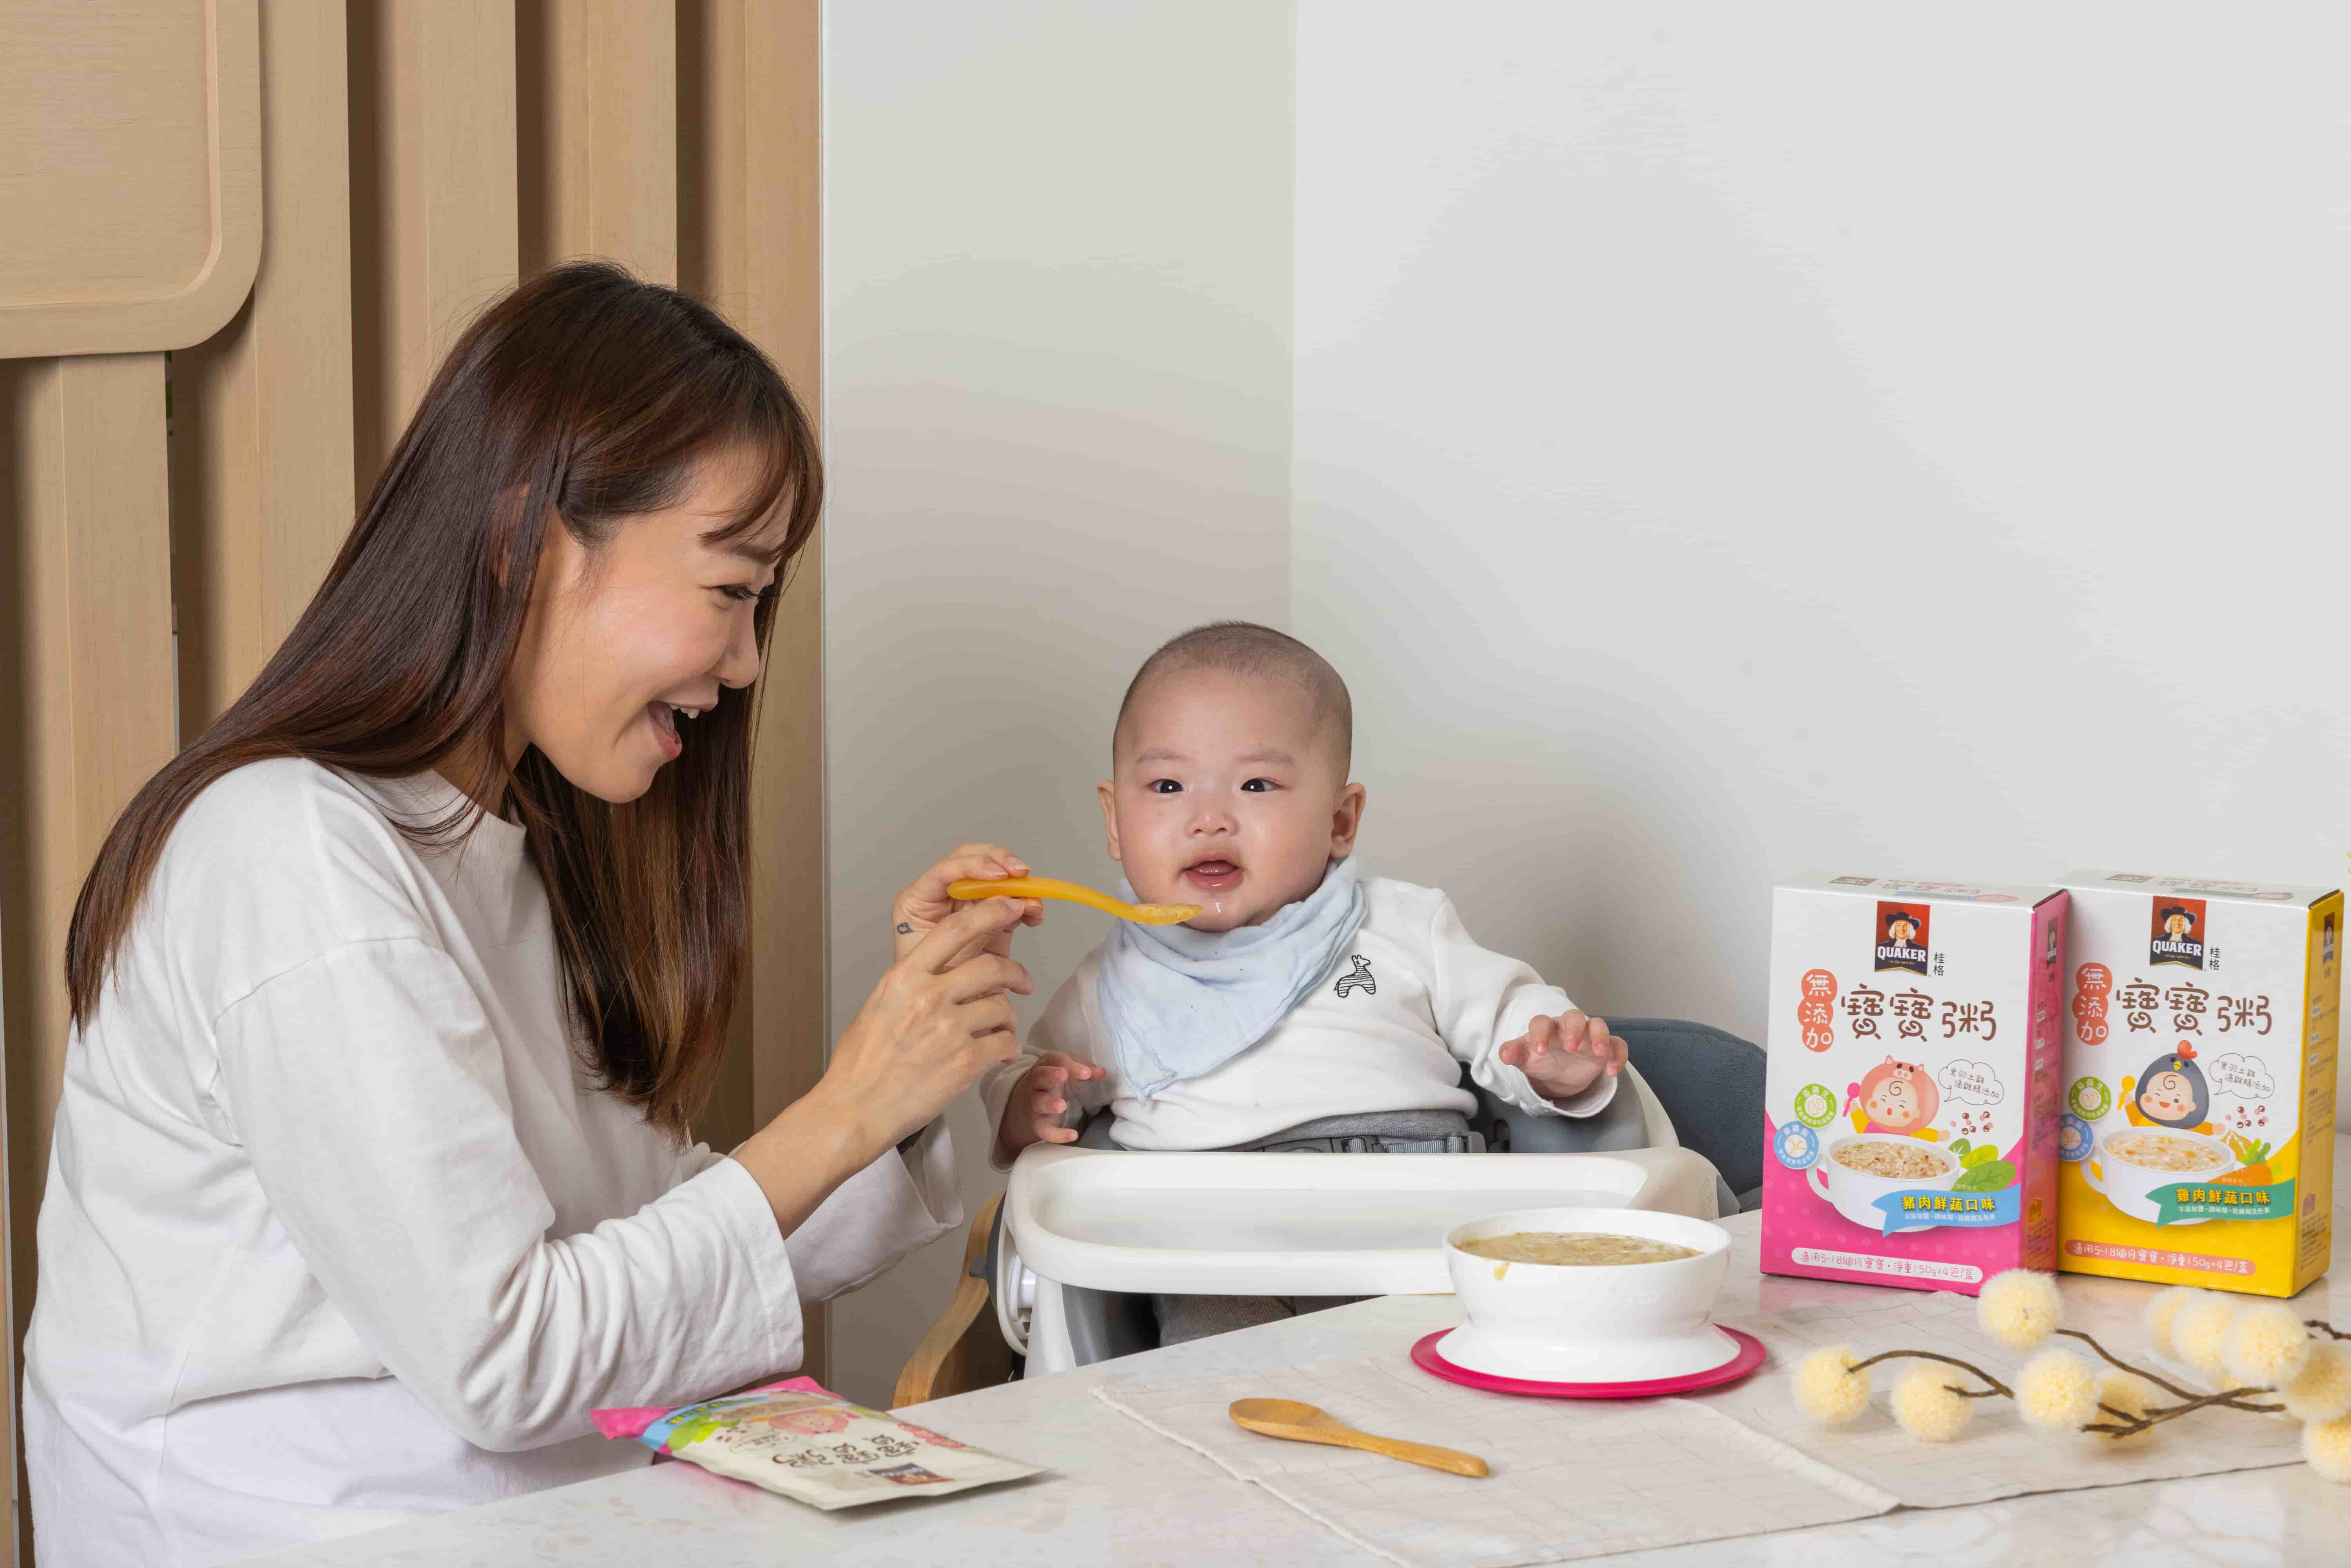 桂格最懂妈妈心「无添加宝宝粥」营养科学为后盾